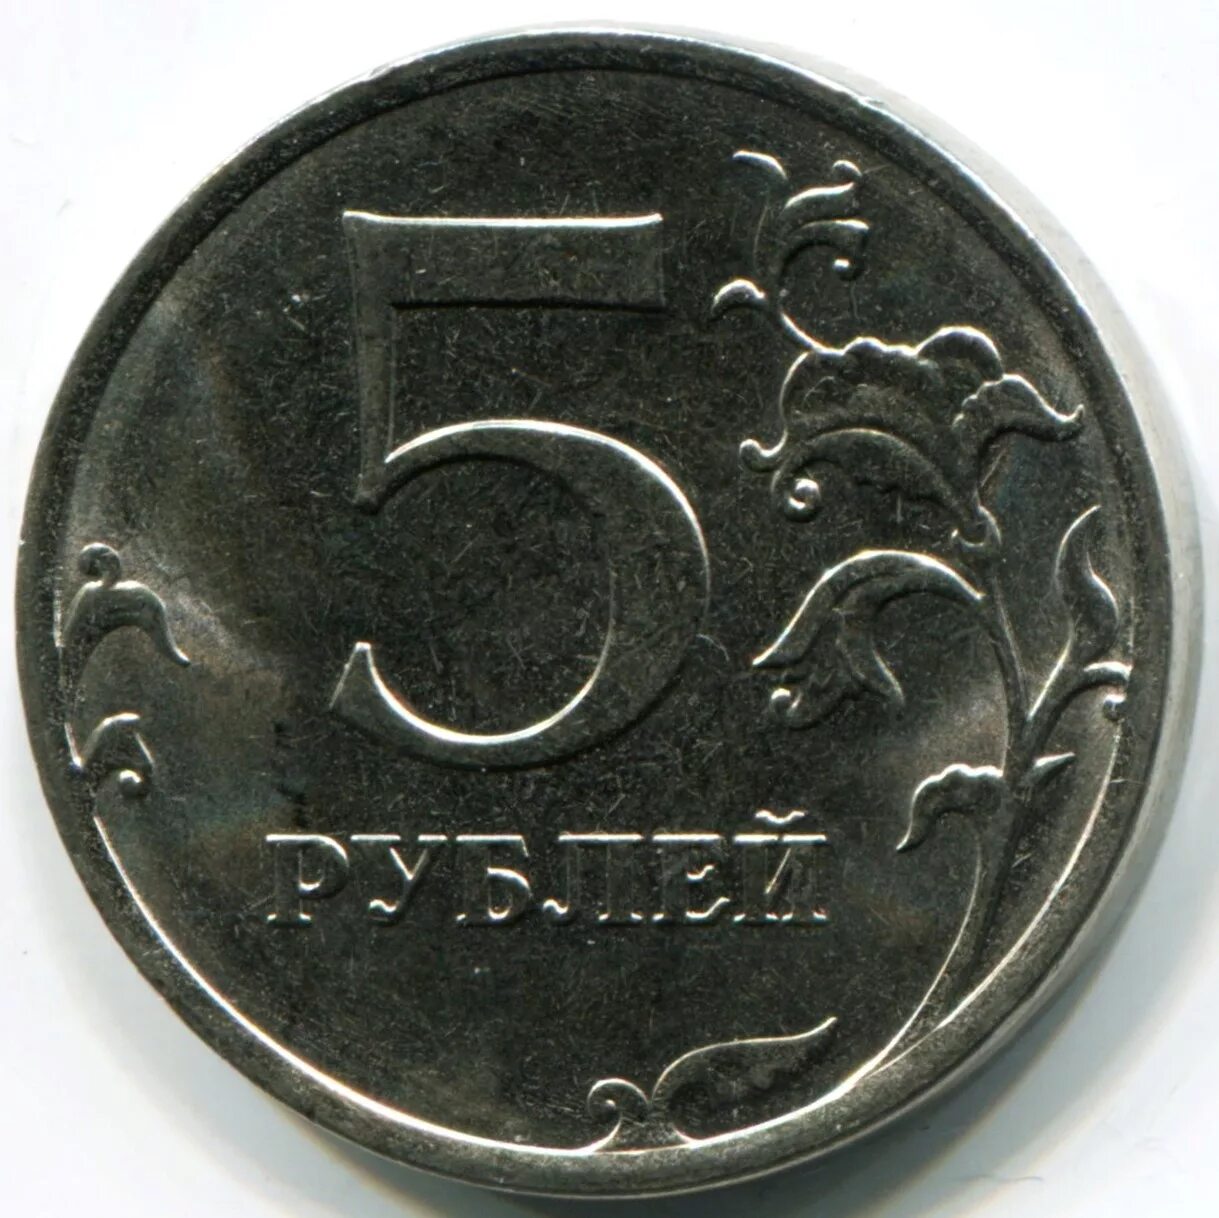 5 Рублей 1997 года СПМД И ММД. Монета 5 рублей. Диаметр 5 рублевой монеты. Пять рублей.